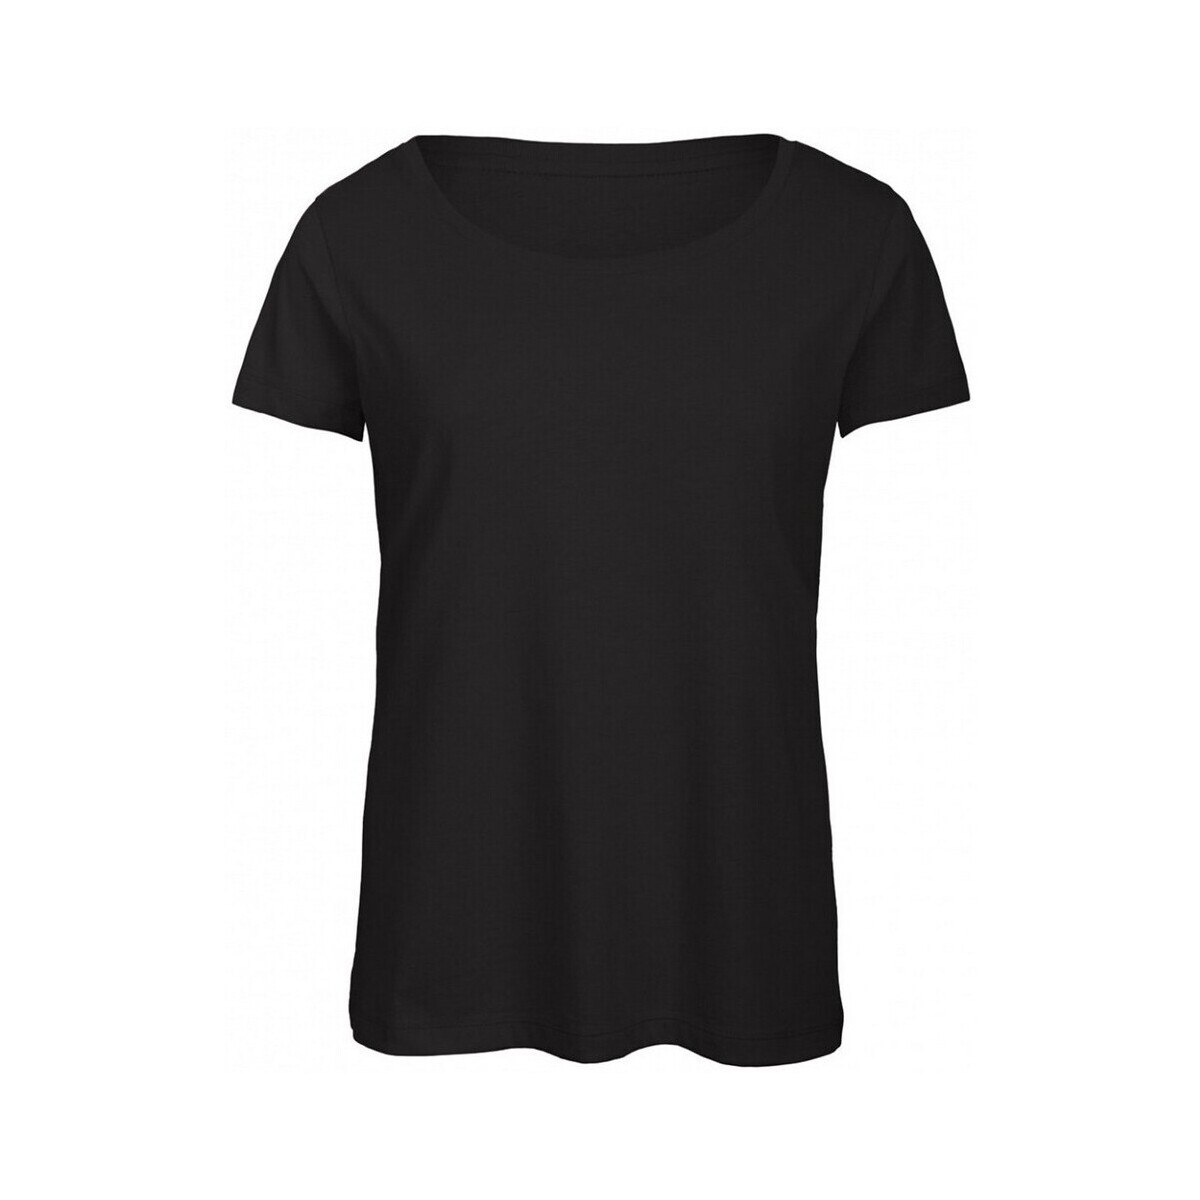 Vêtements Femme T-shirts manches longues B&c B121F Noir